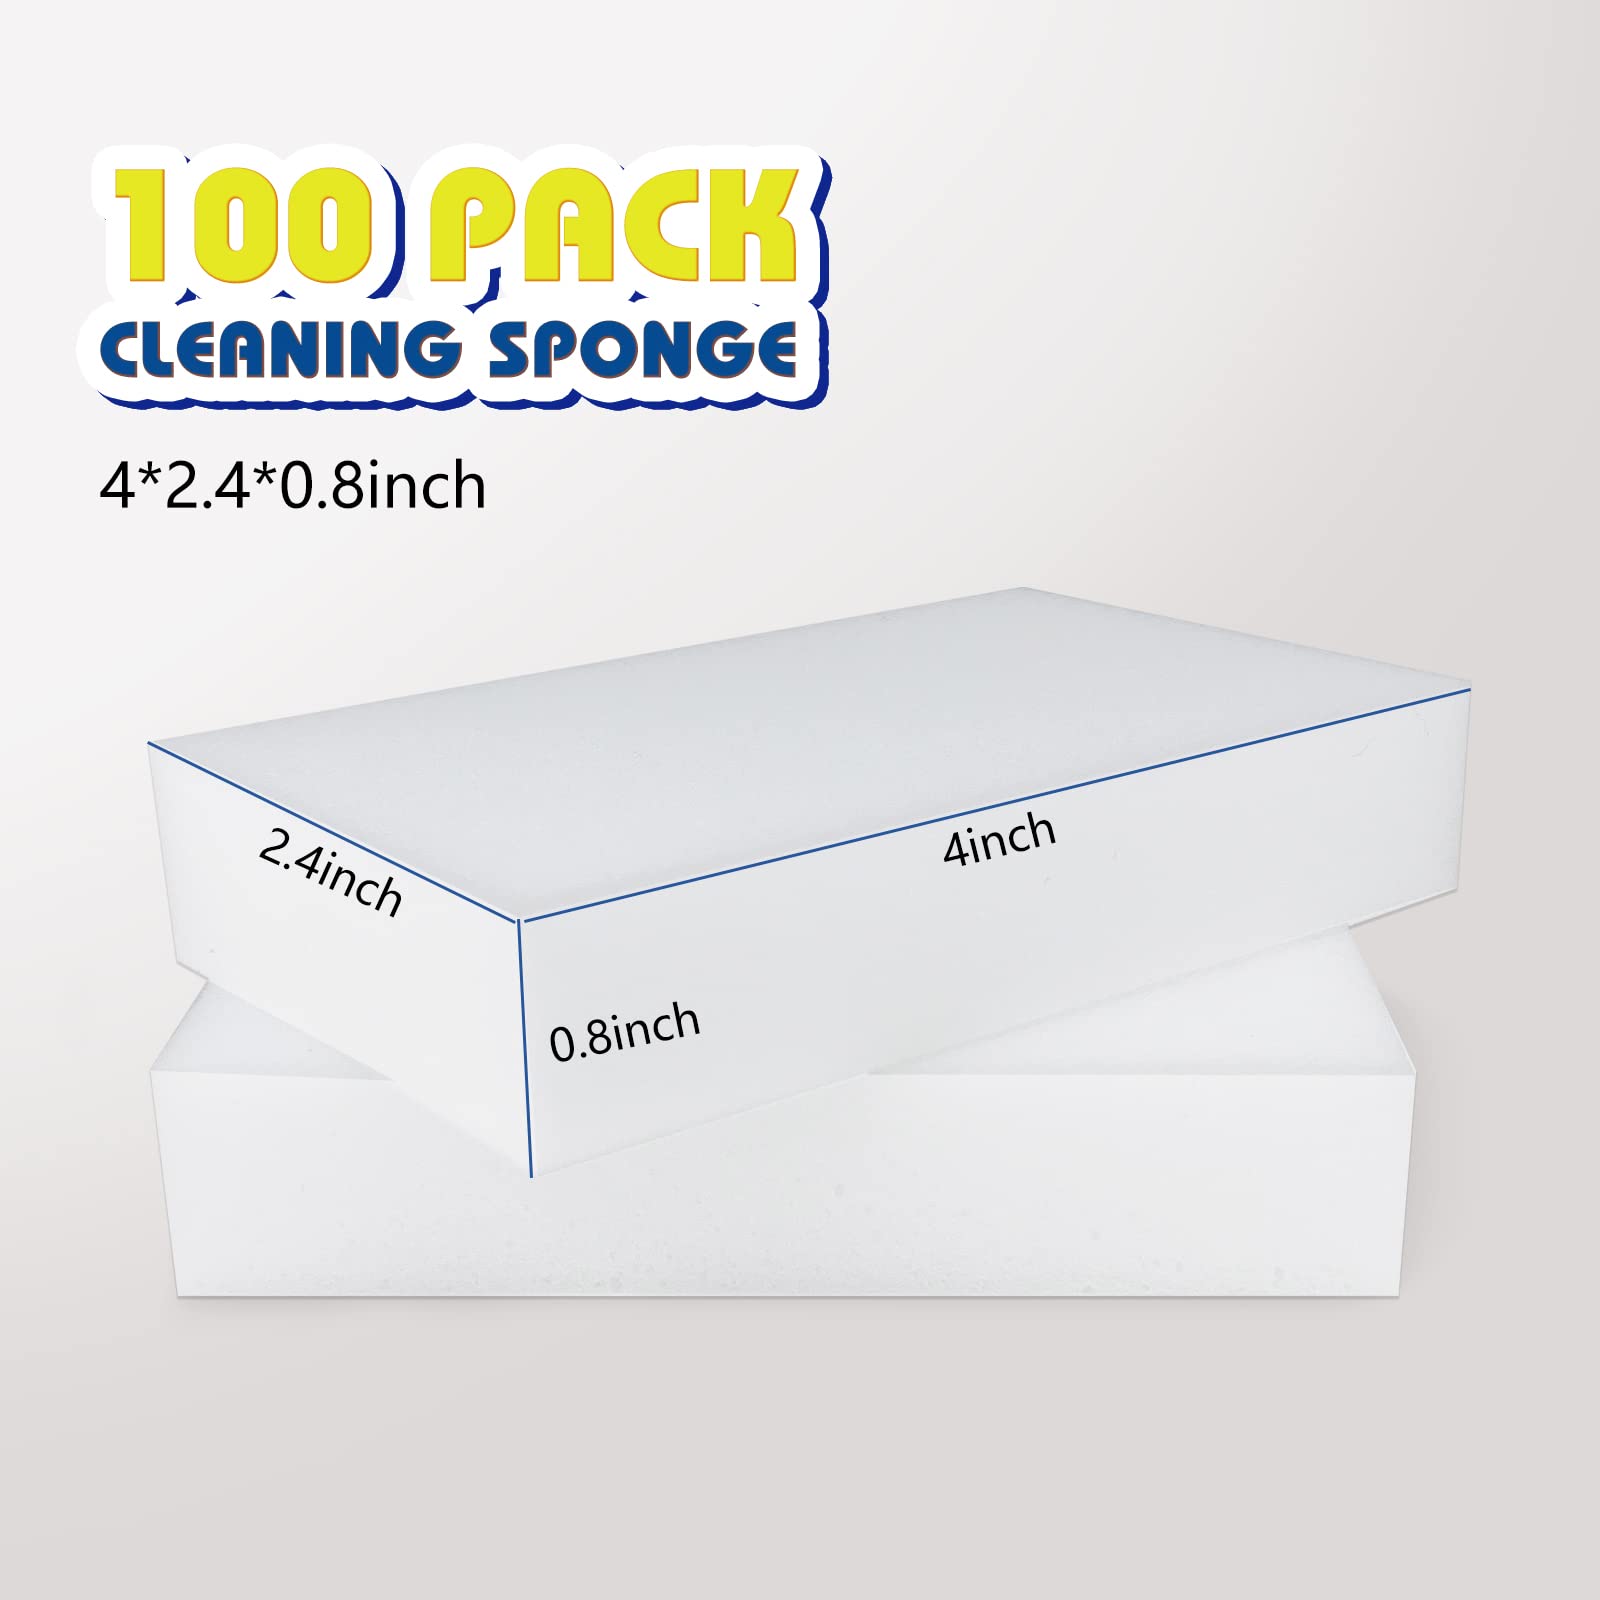 JOYENERGY 100 Pack Magic Sponge Eraser, Melamine Sponges Foam Pads in Bulk, Multi-Functional Household Cleaning Sponges Eraser for Kitchen, Furniture, Bathroom, Household Cleaning